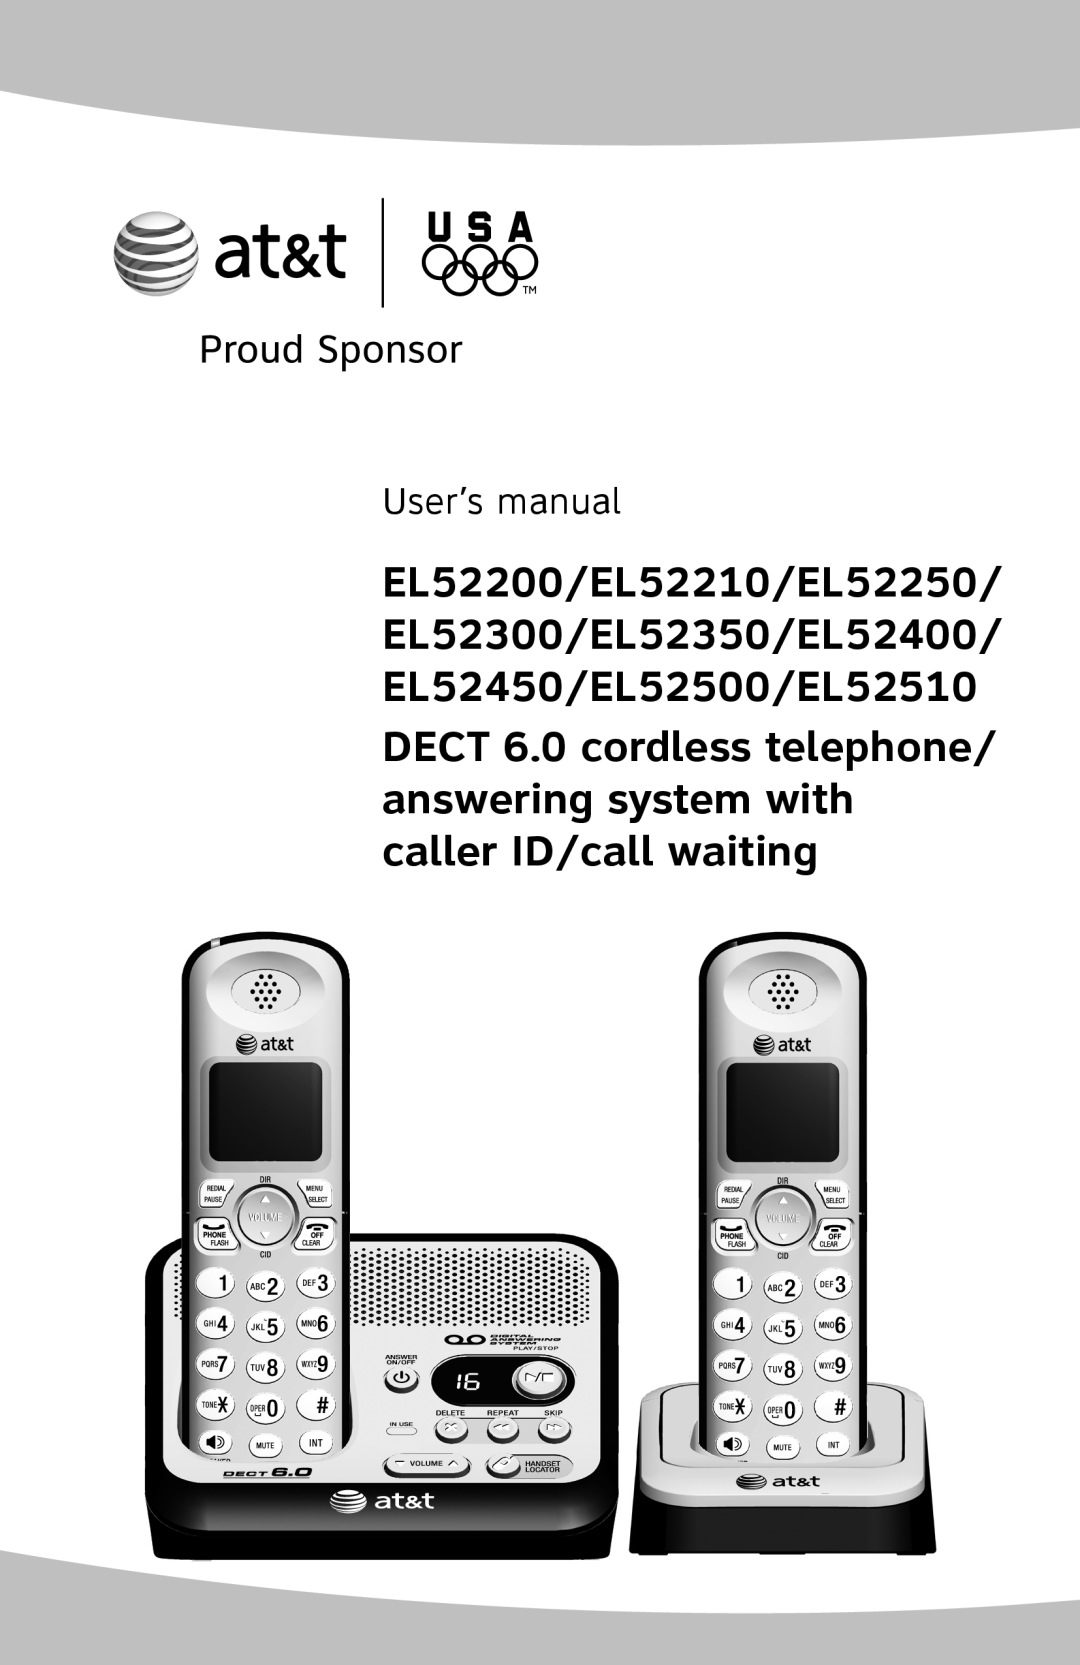 AT&T user manual User’s manual, EL52200/EL52210/EL52250 EL52300/EL52350/EL52400, EL52450/EL52500/EL52510 